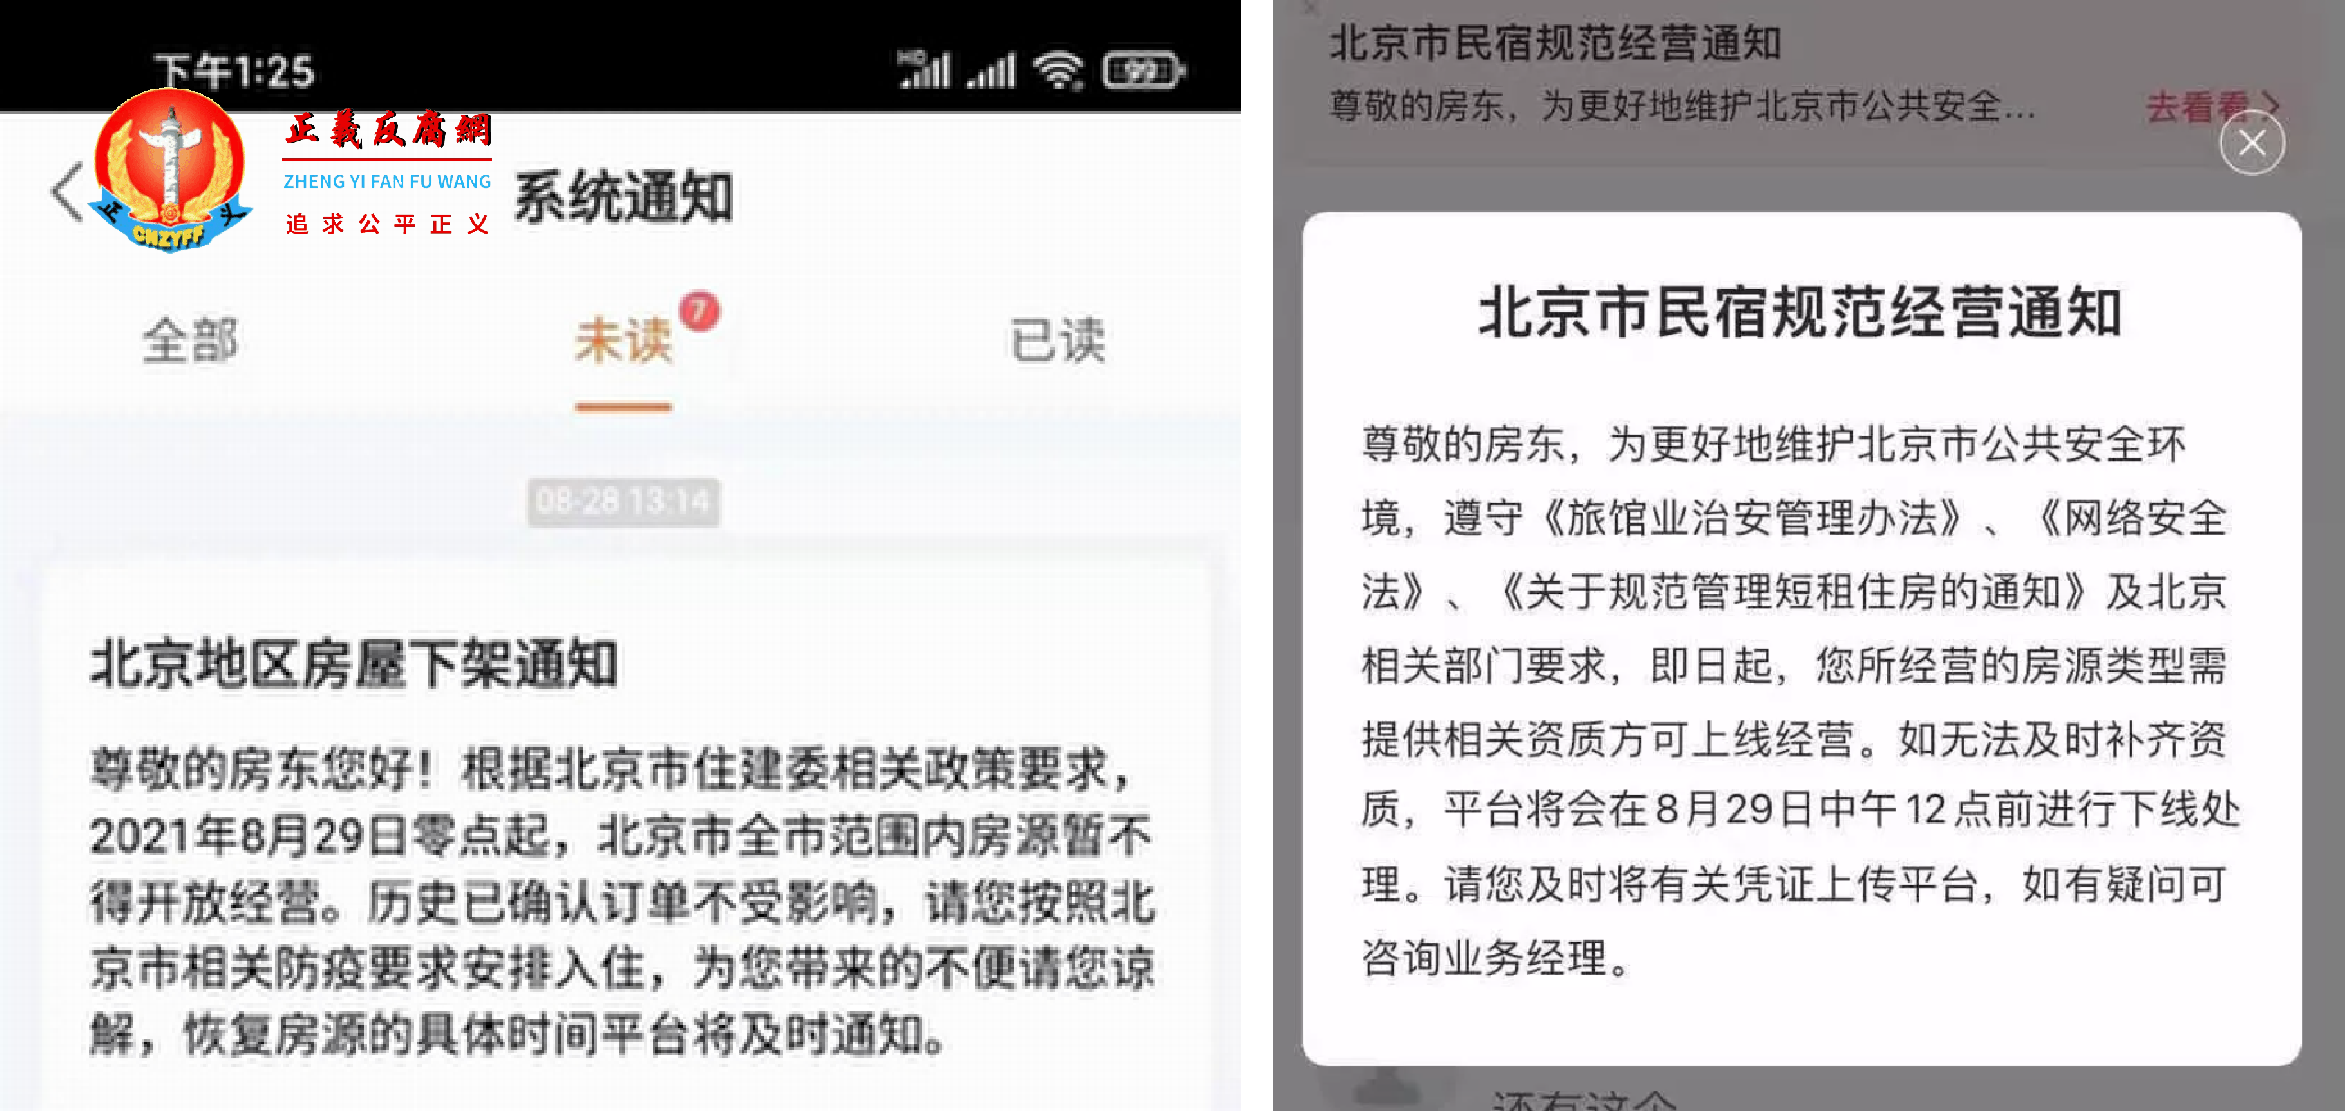 多平台发布北京民宿下架通知。.png